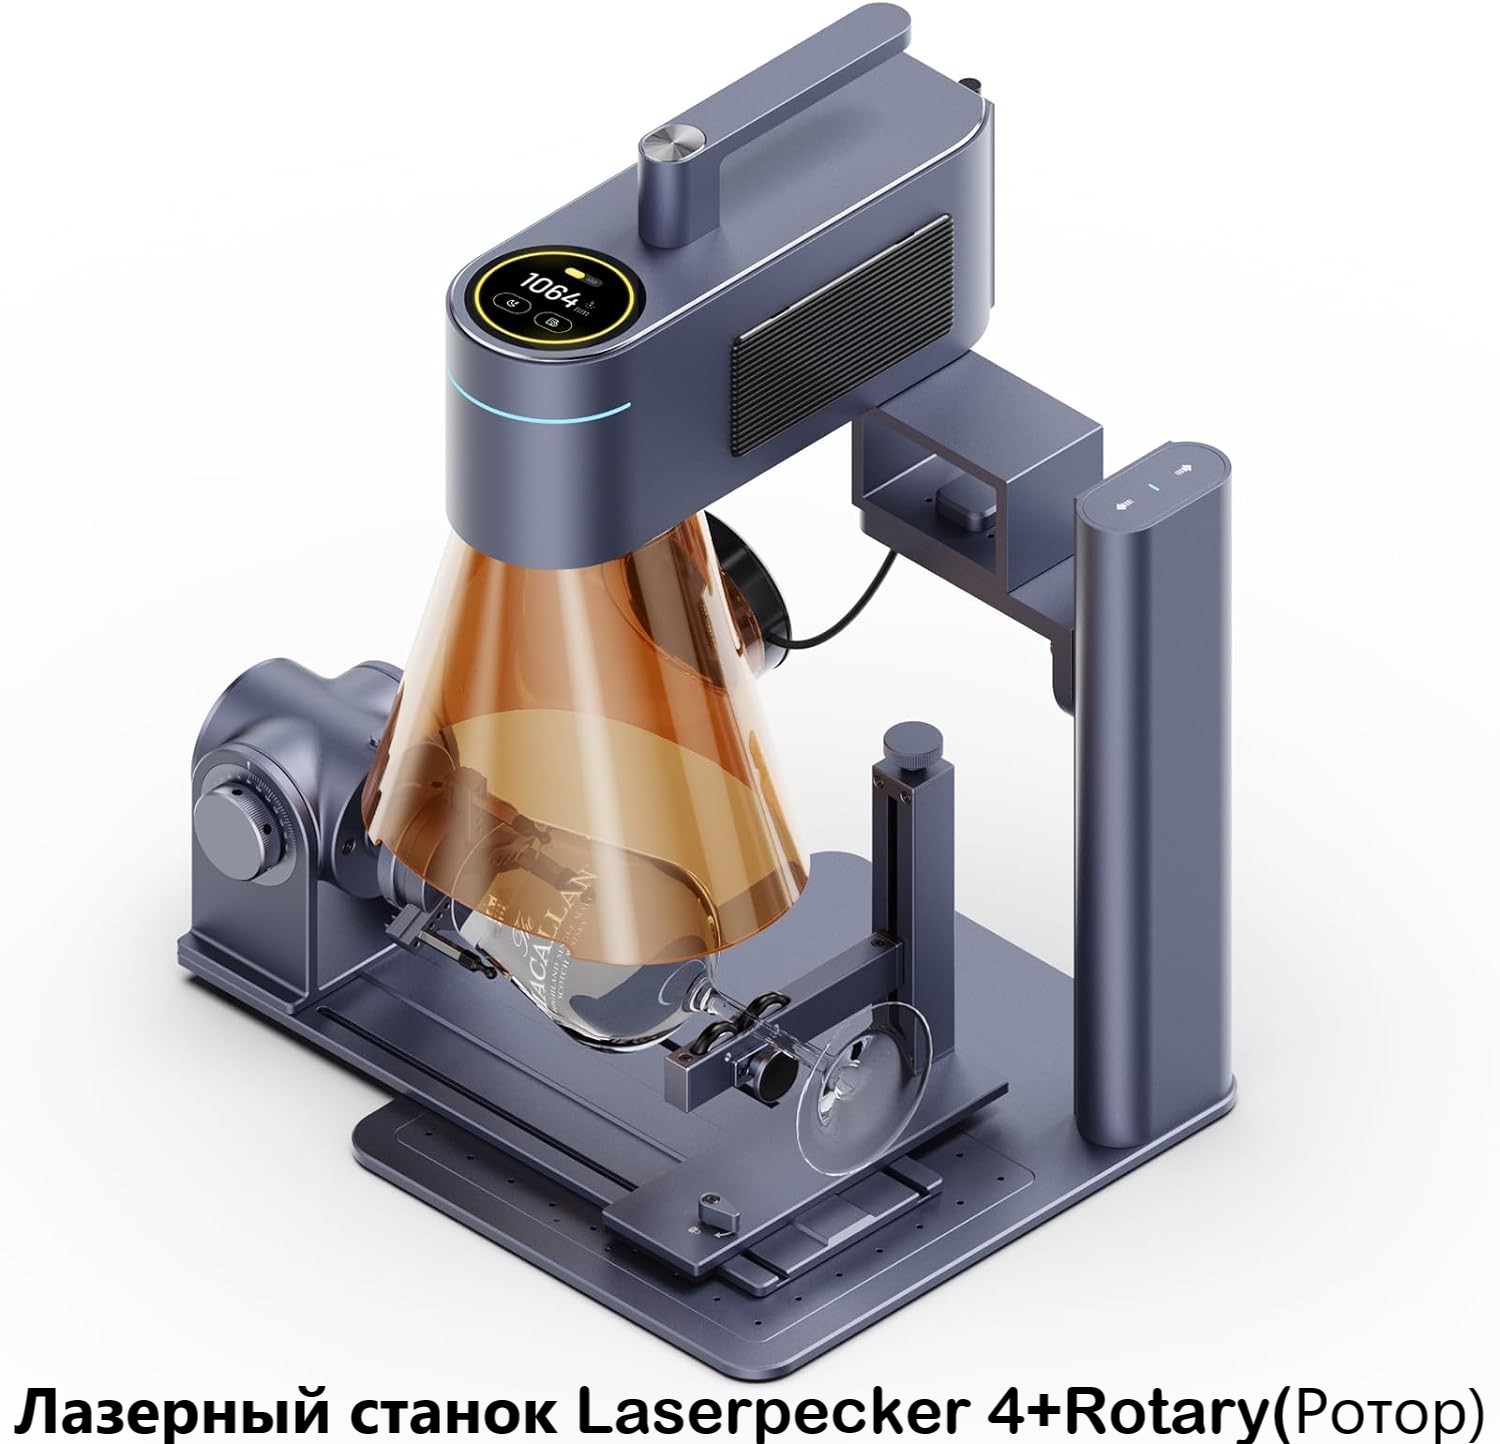 Станок для лазерной гравировки, маркировки, резки LaserPecker 4 + Rotary Extension (ротор) станок для лазерной гравировки маркировки резки laserpecker 4 slide extension платформа